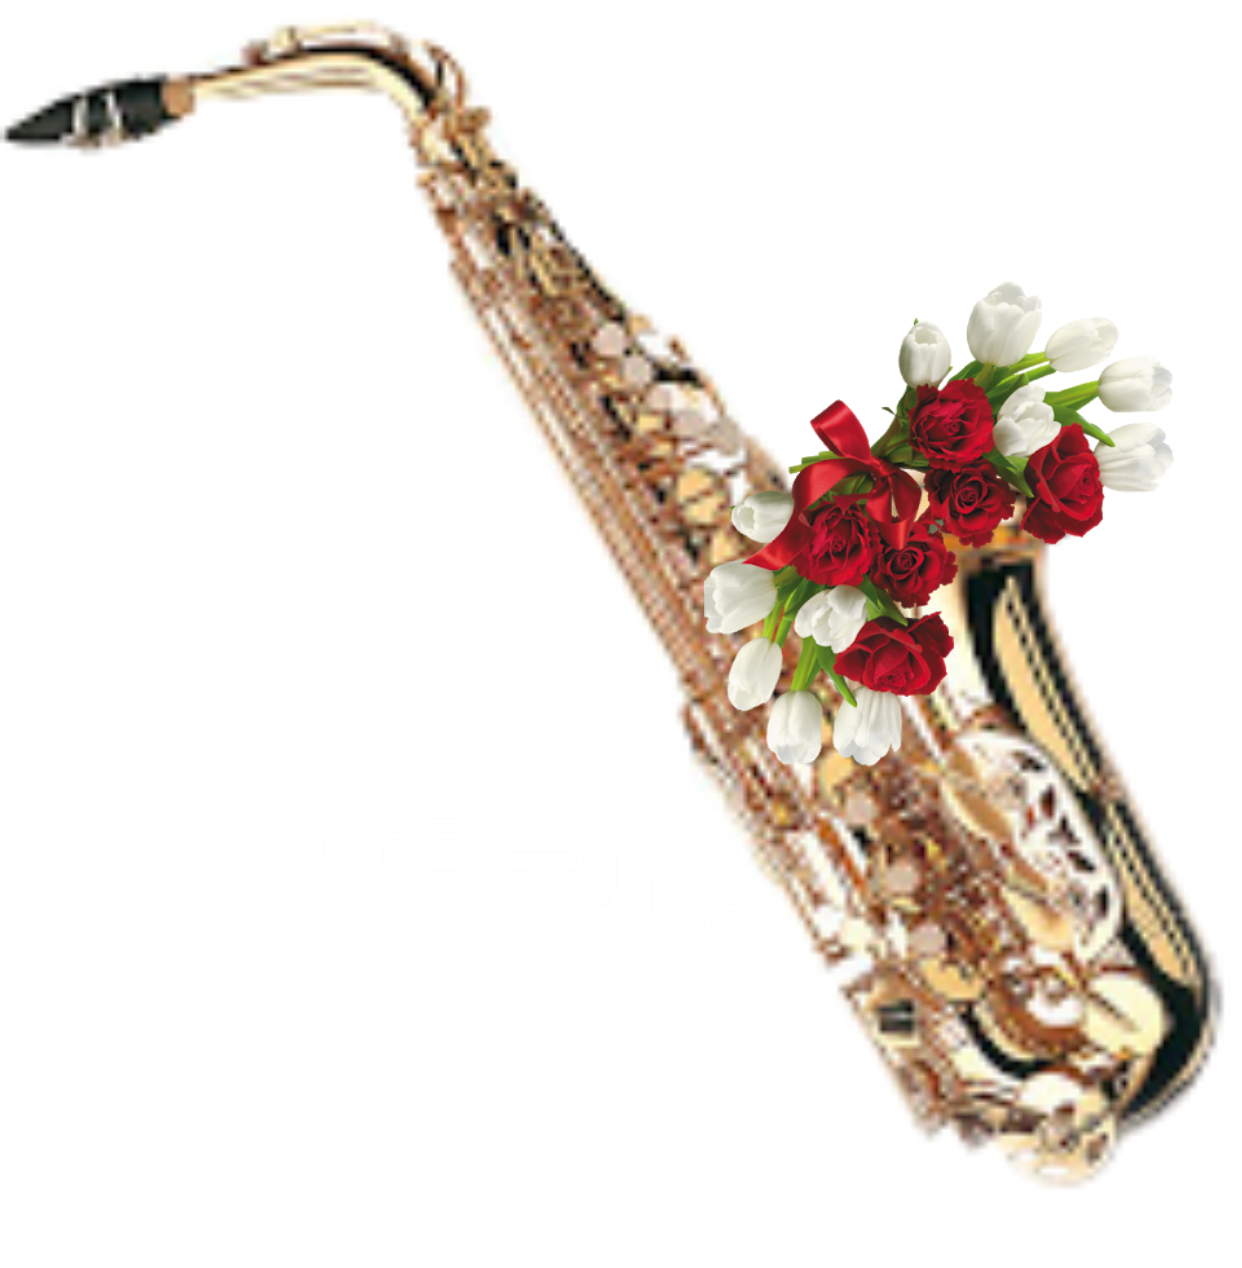 Просто саксофон. Саксофон. Саксофон музыкальный инструмент. Цветы саксофонисту. Саксофон и цветы.